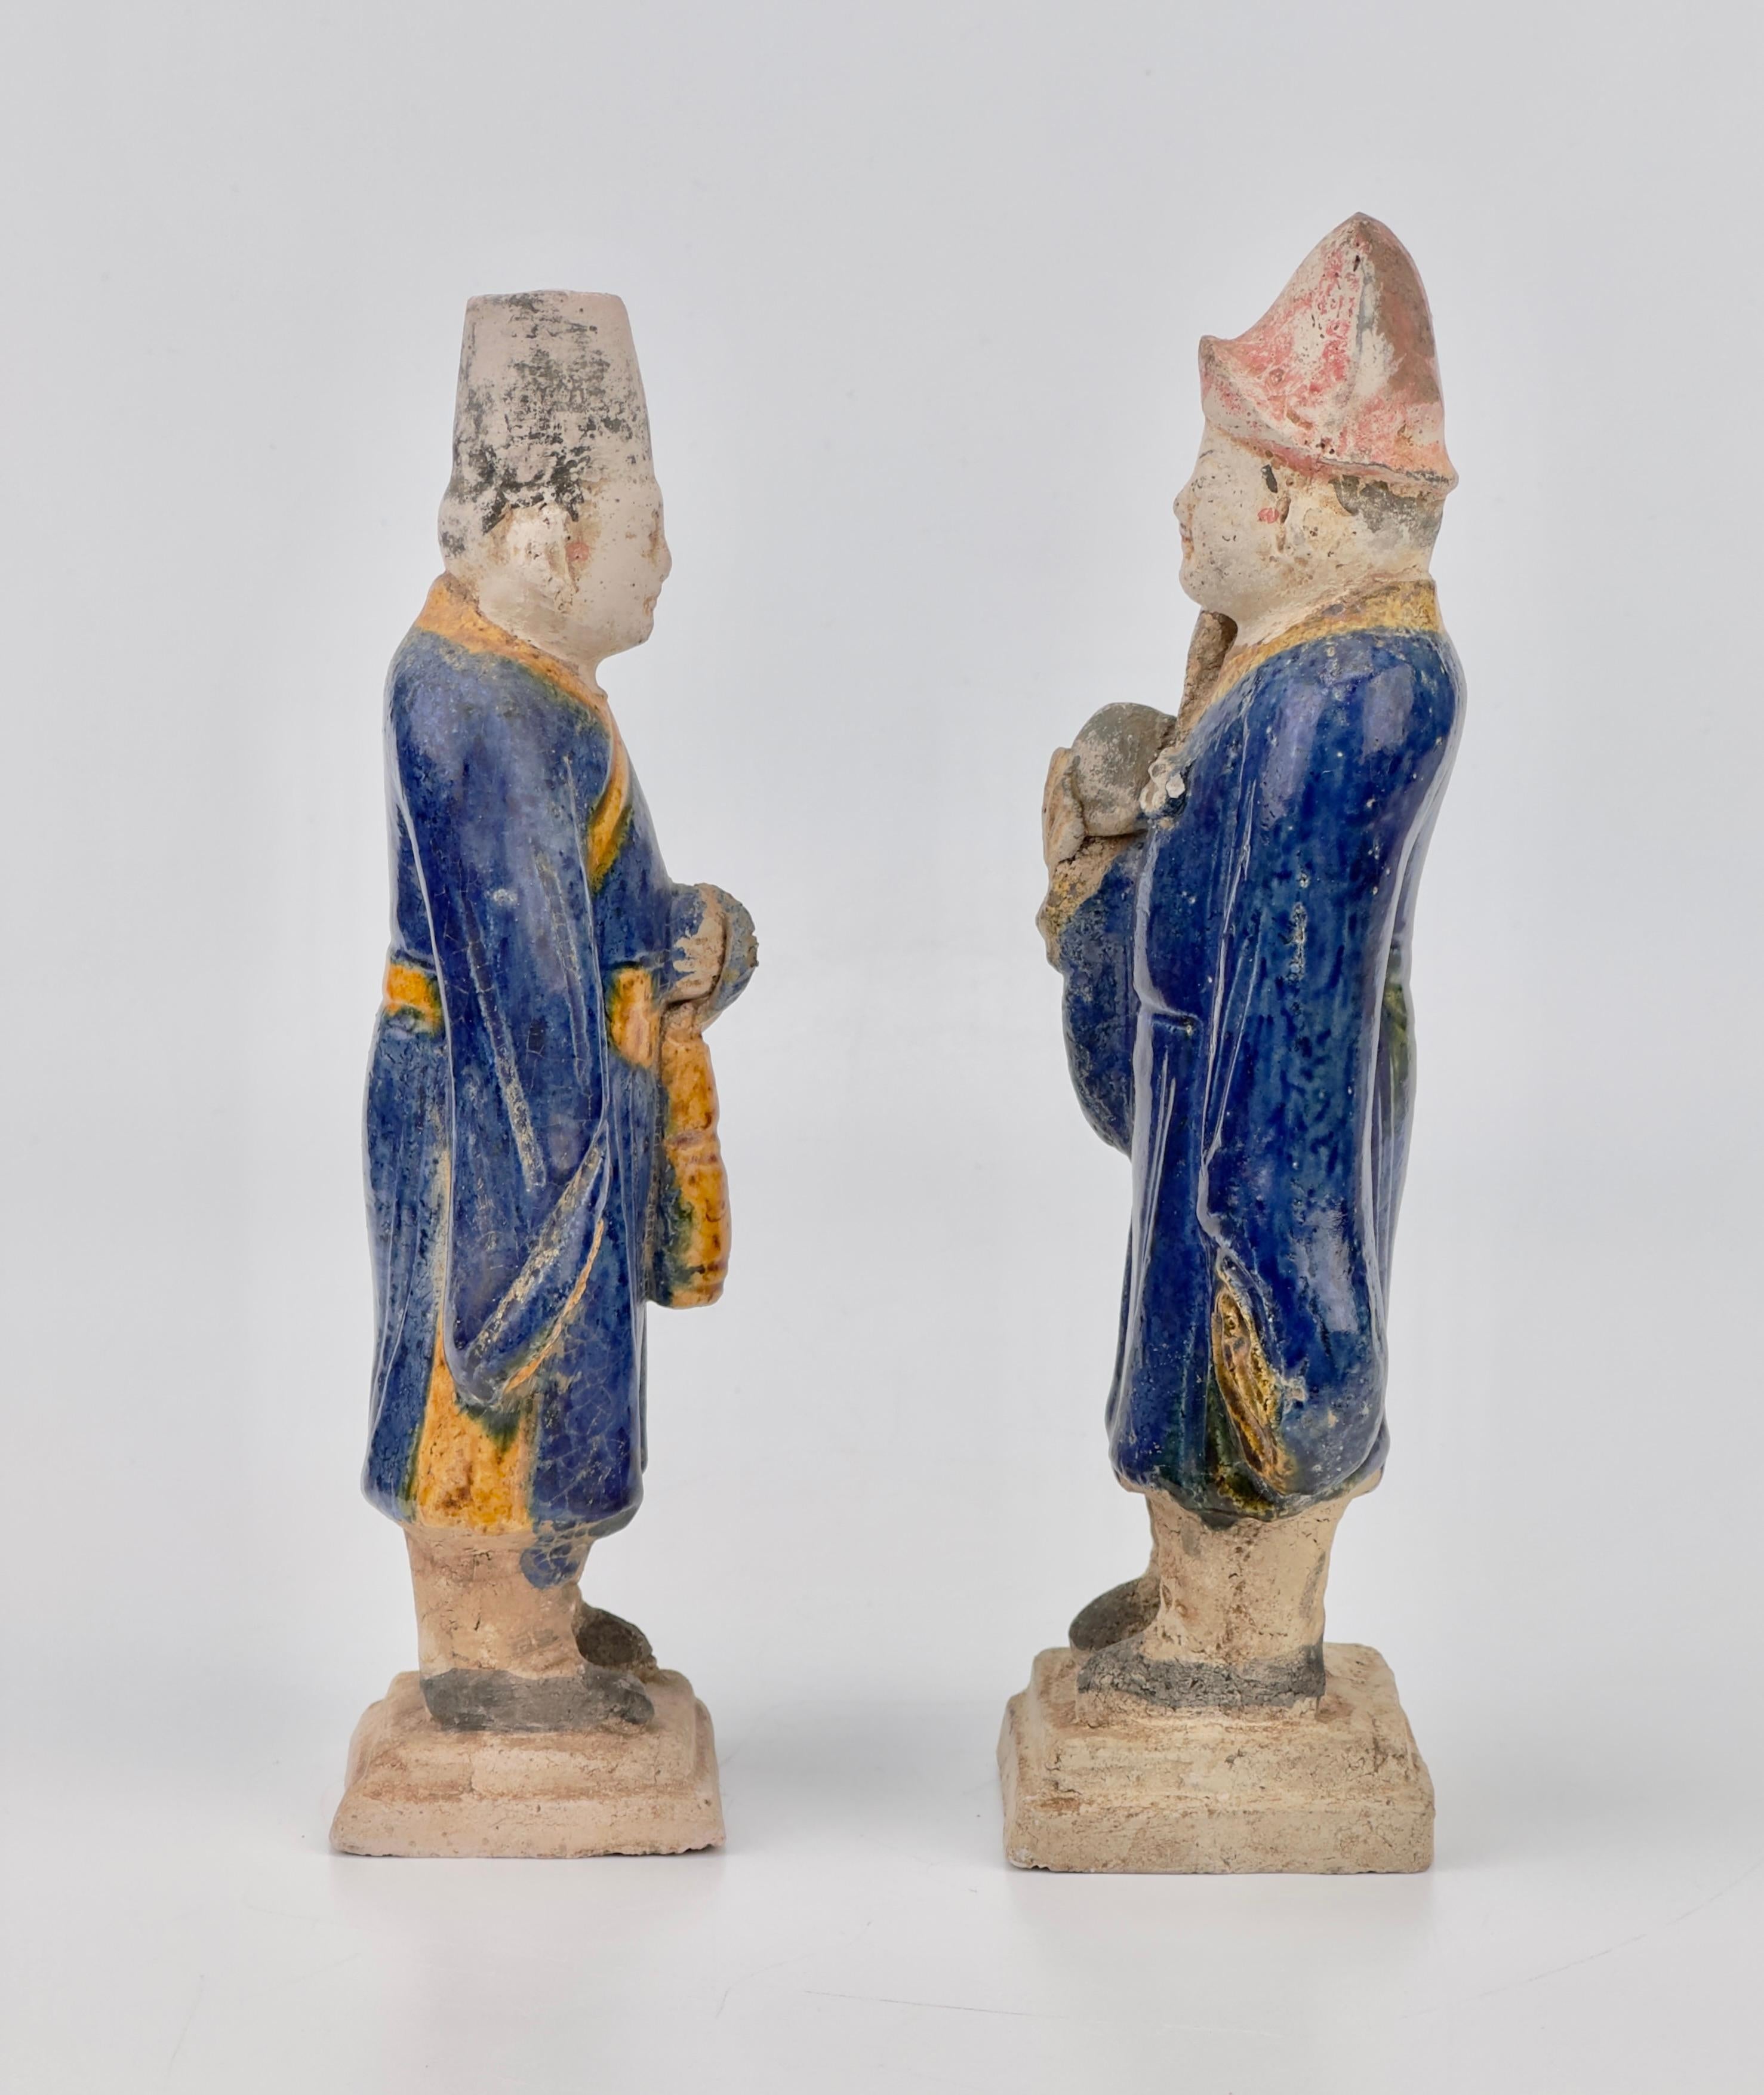 Auf rechteckigen Sockeln stehen Statuen chinesischer Würdenträger aus Terrakotta mit blauen und ockerfarbenen Glasuren. Die weitärmeligen Gewänder und die Handwerkskunst sowie die zylindrischen Hüte weisen auf ihre Herkunft hin, insbesondere aus der